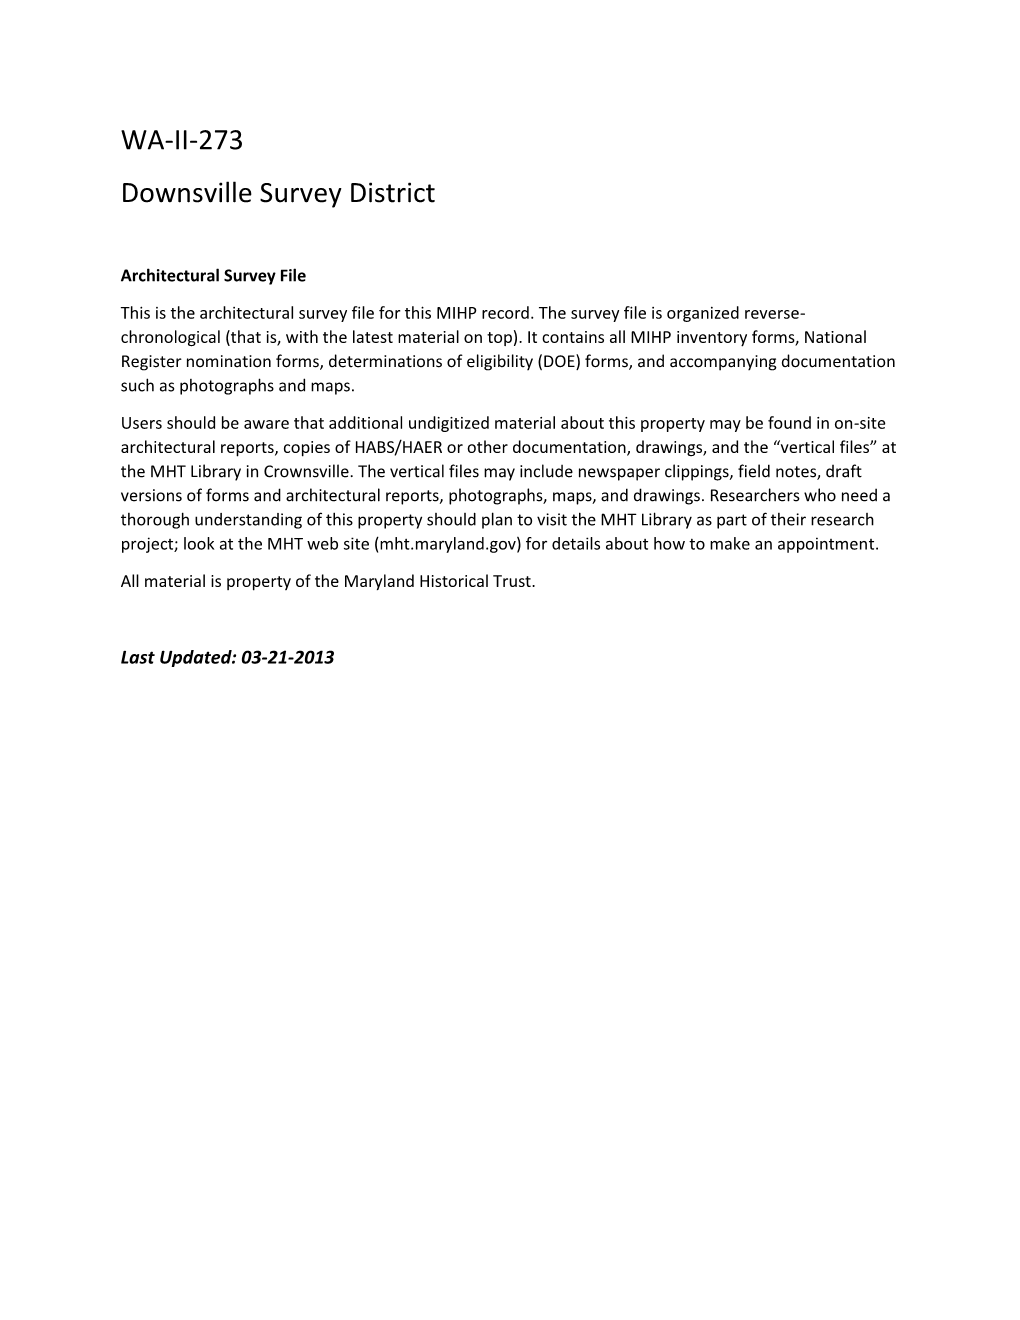 WA-II-273 Downsville Survey District